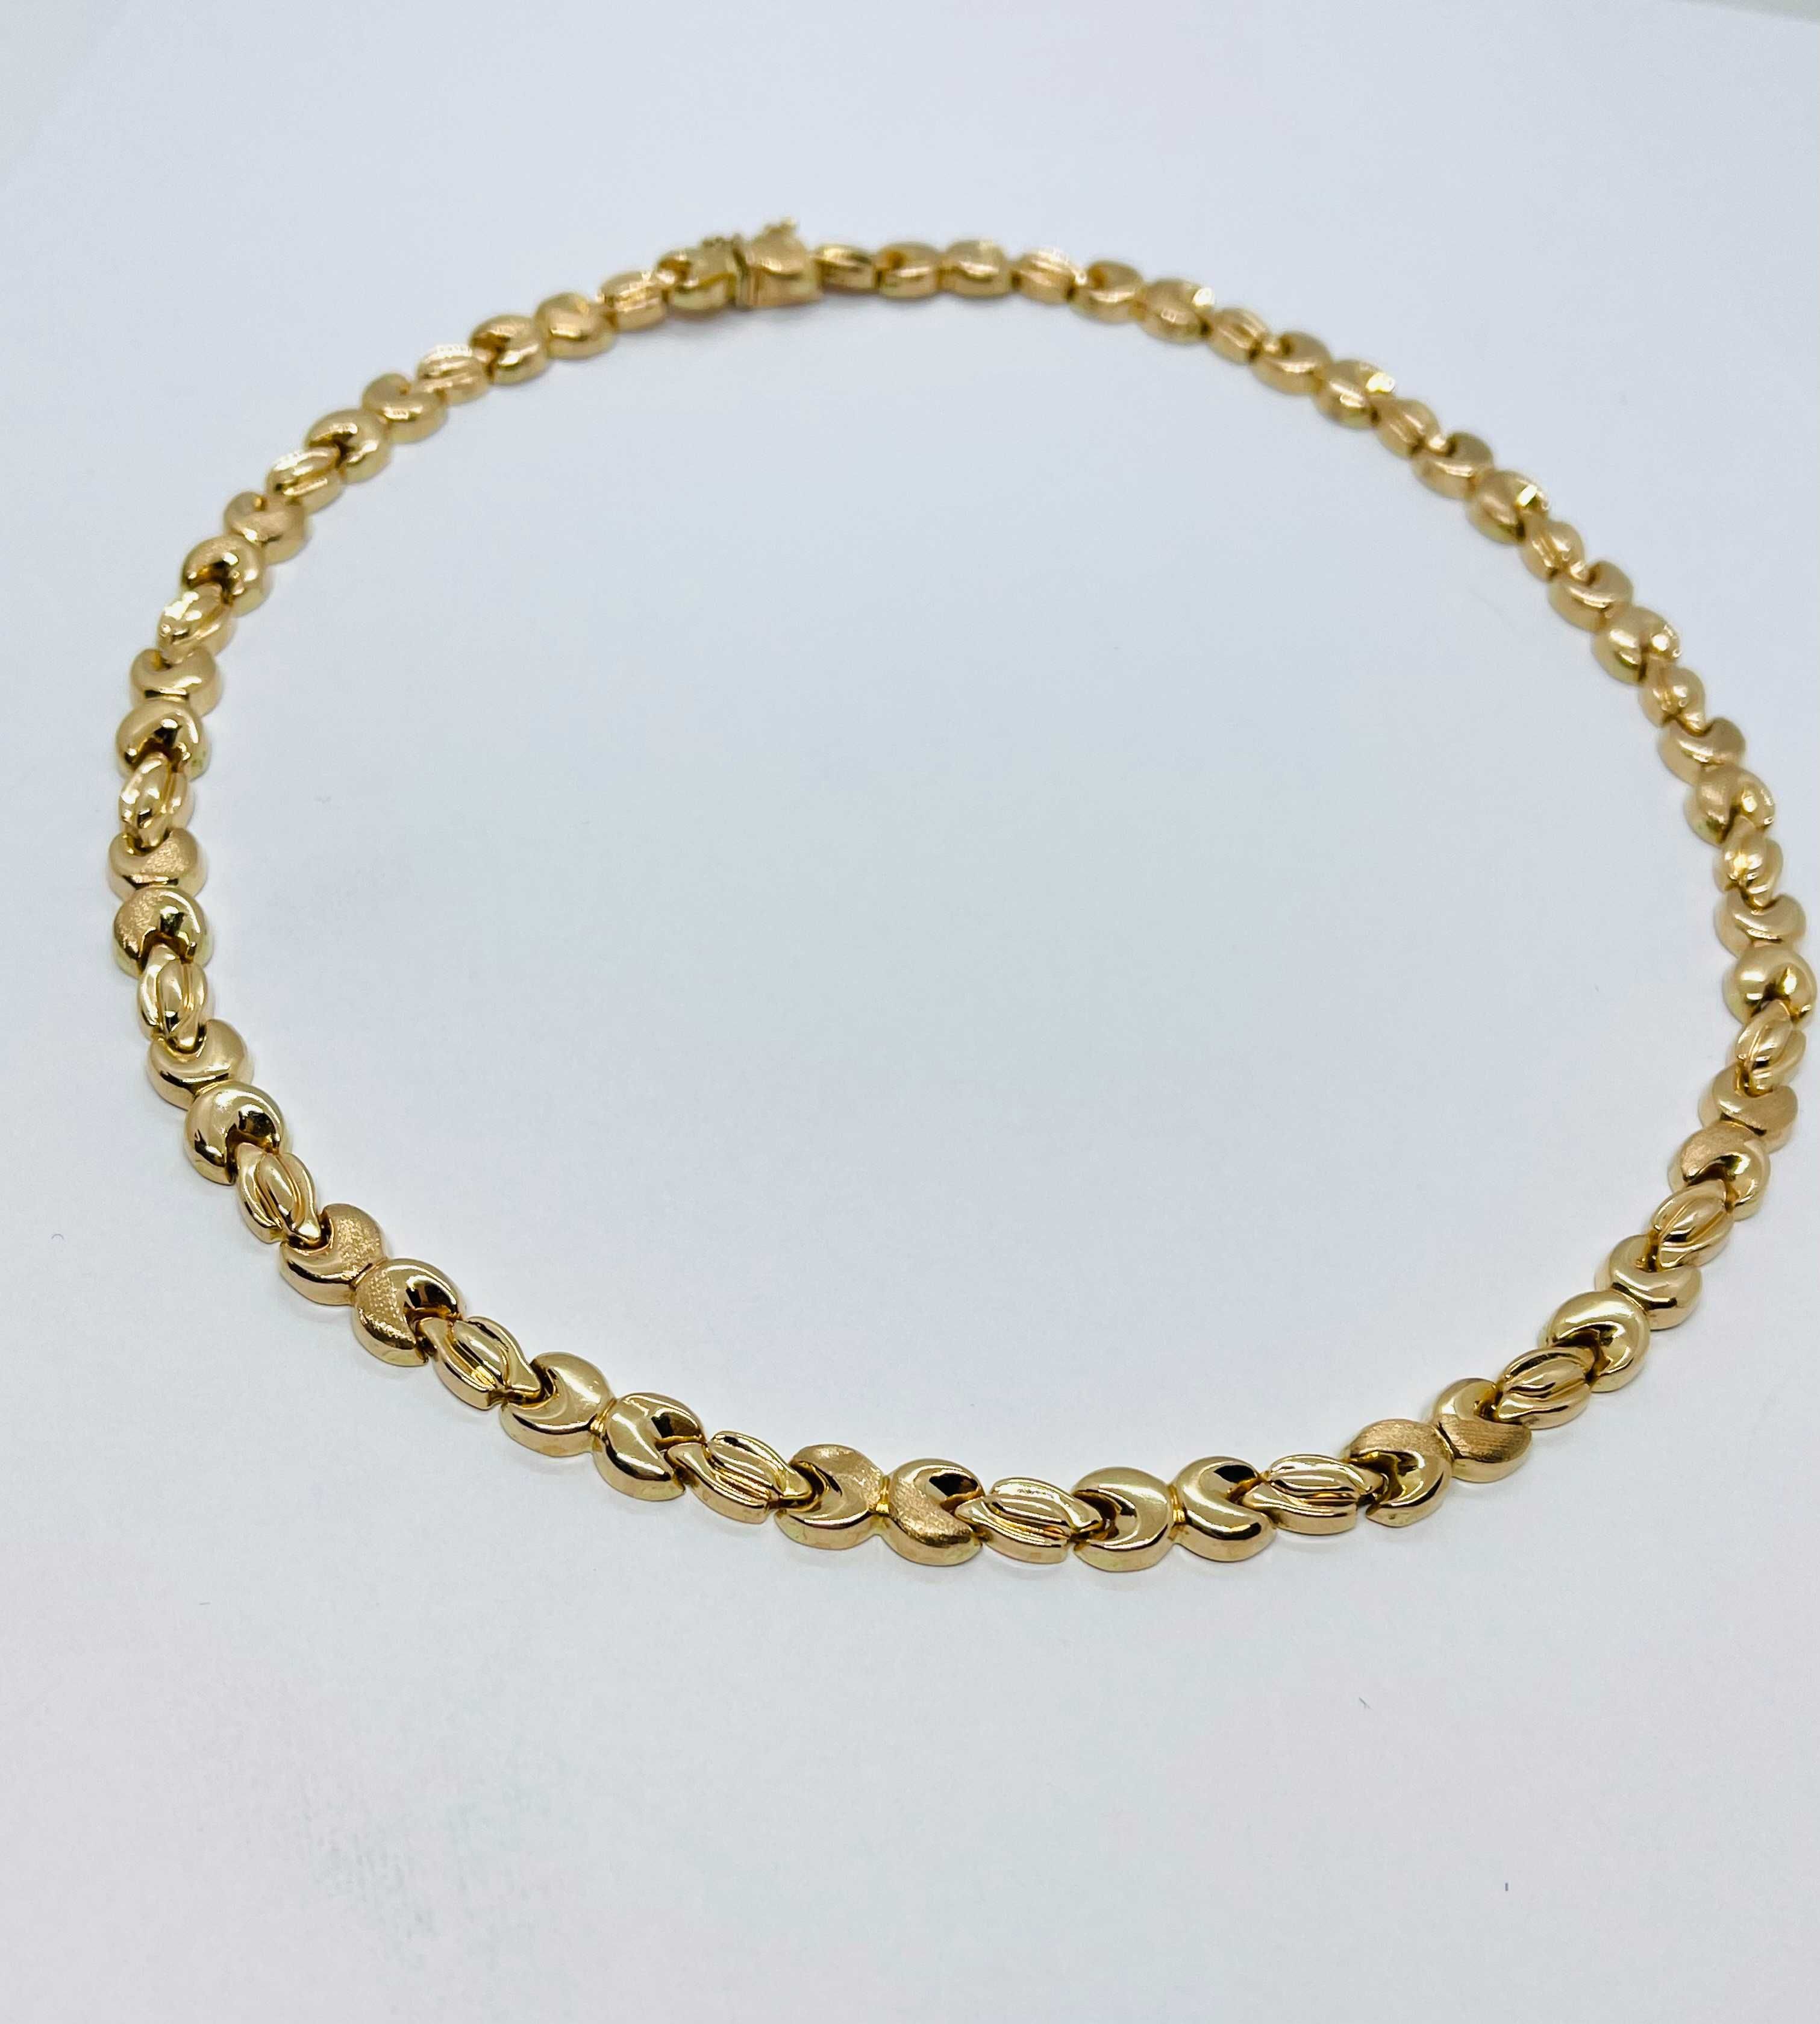 Łańcuszek złoty naszyjnik kolia złota pr.585 -21,92 gram- STAN IDEALNY